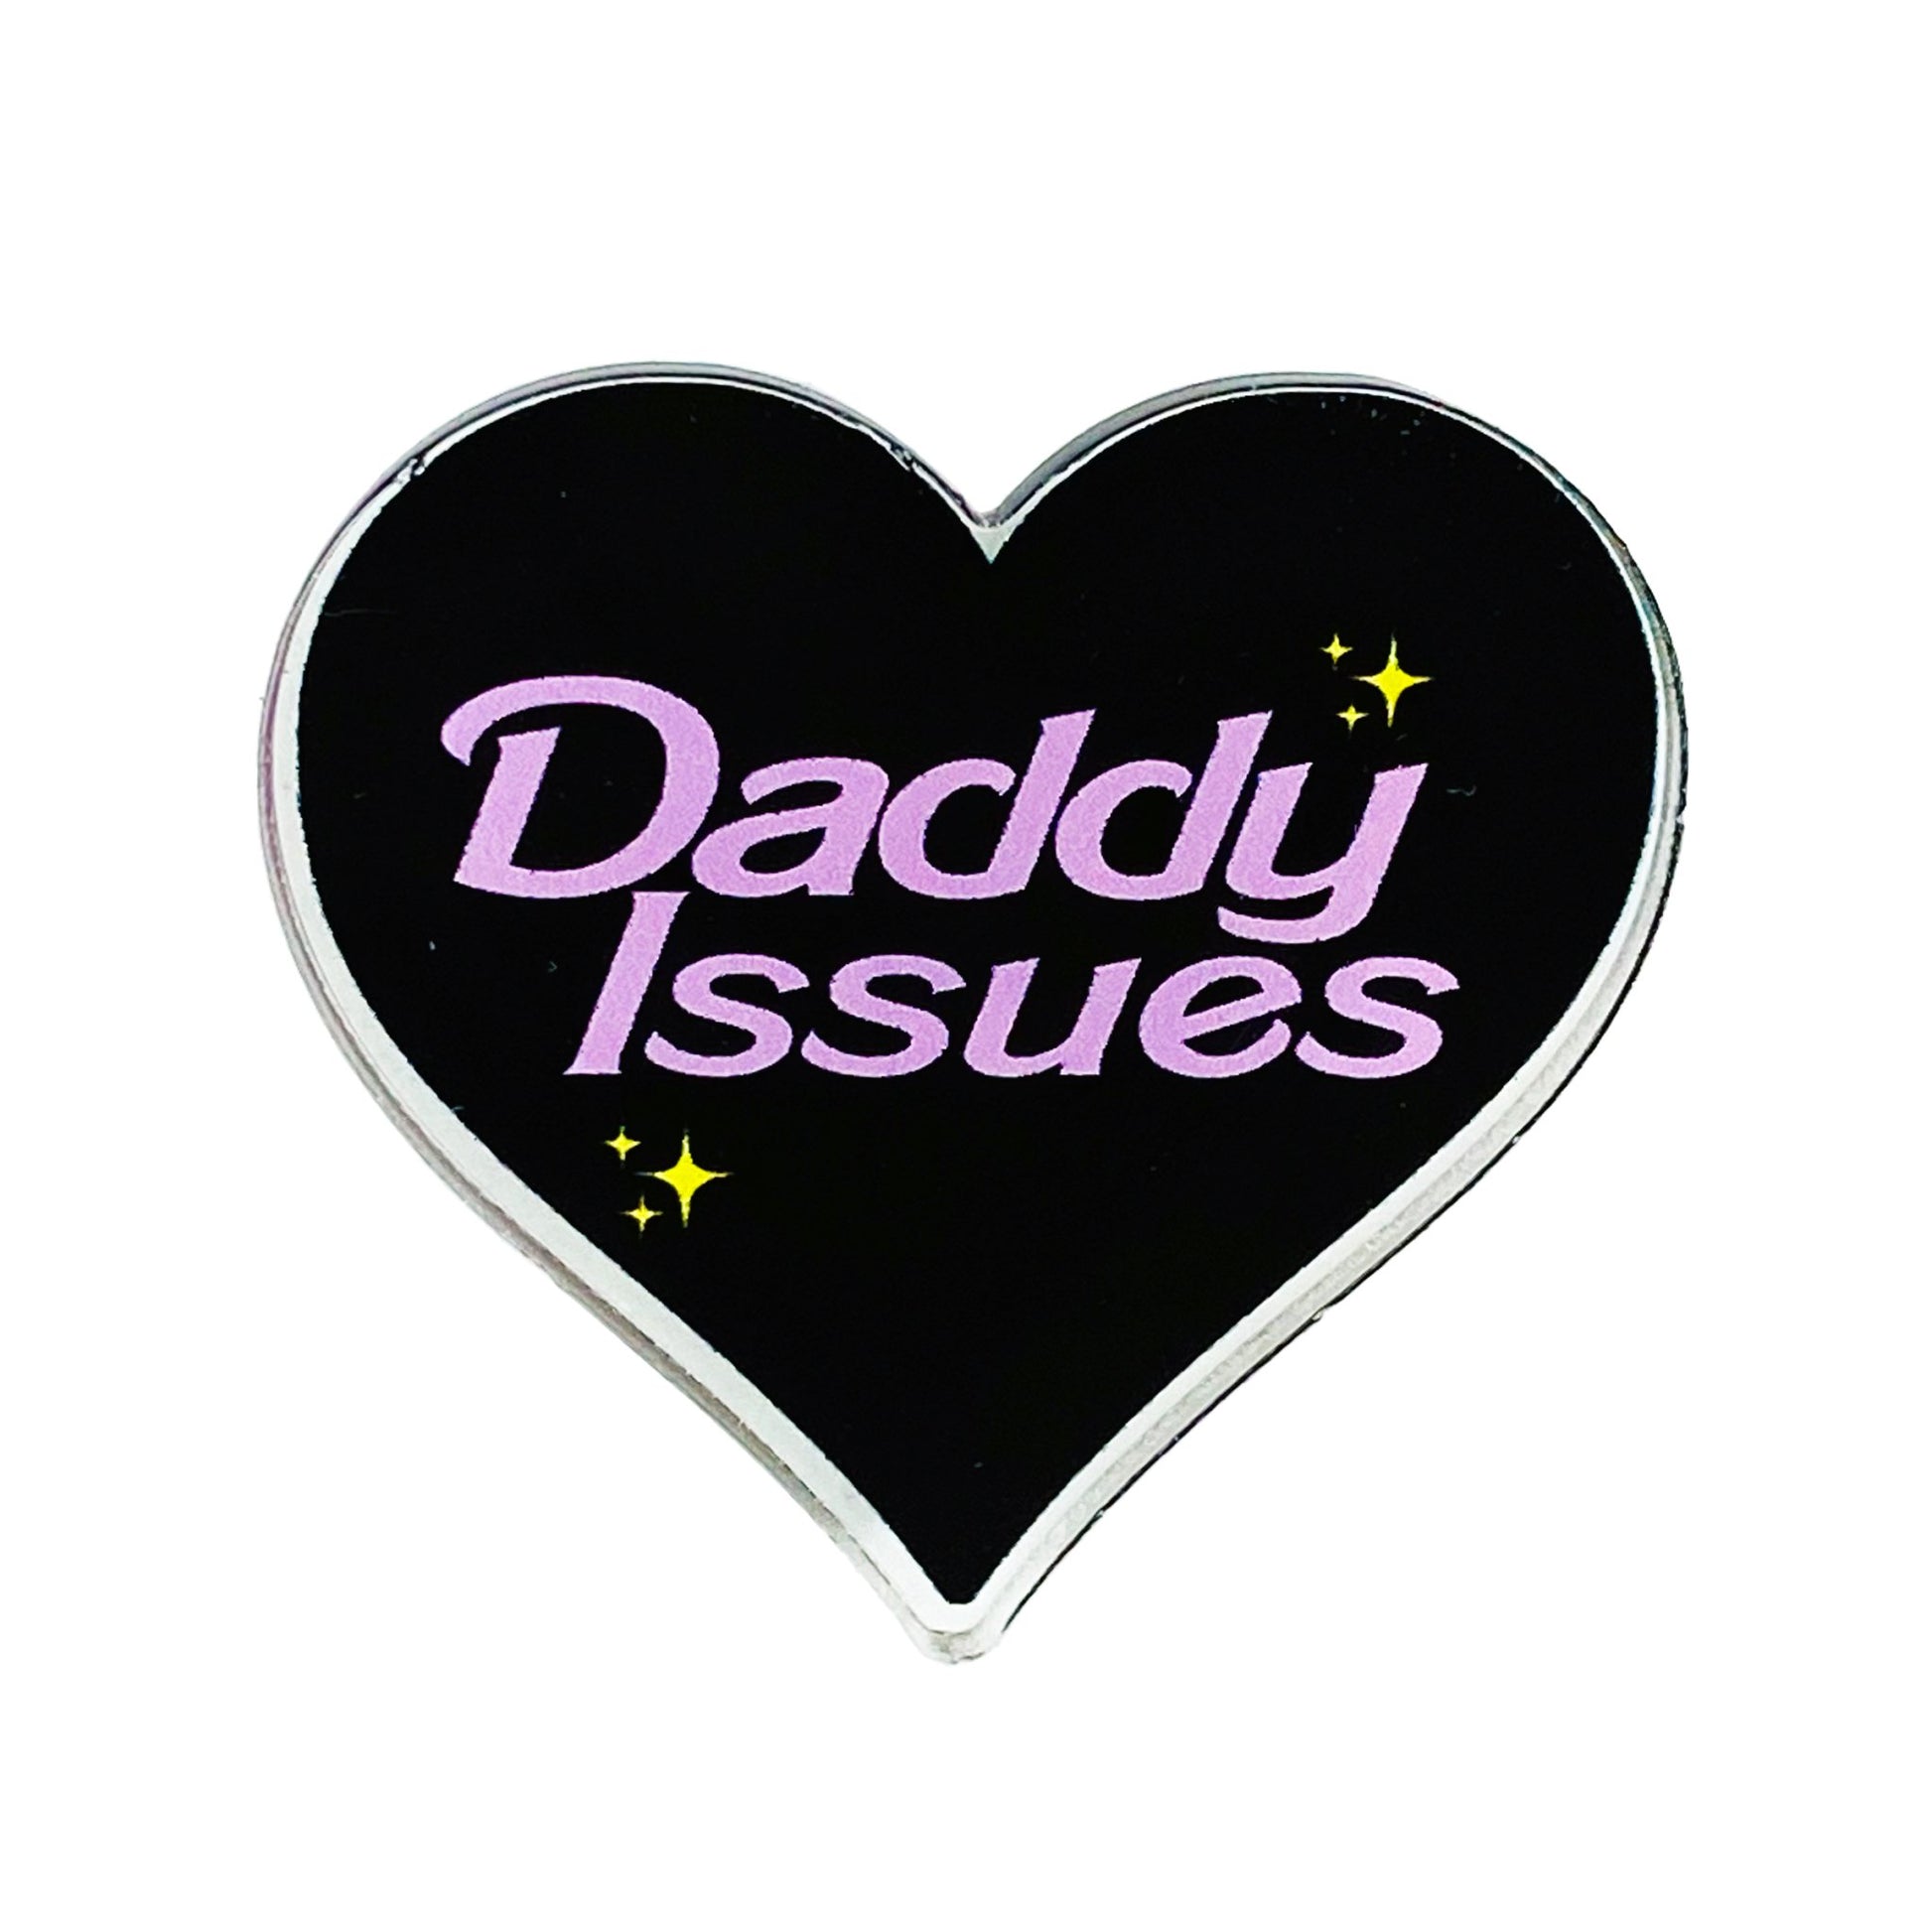 Daddy Issues Pin - CHERRYCHOKE